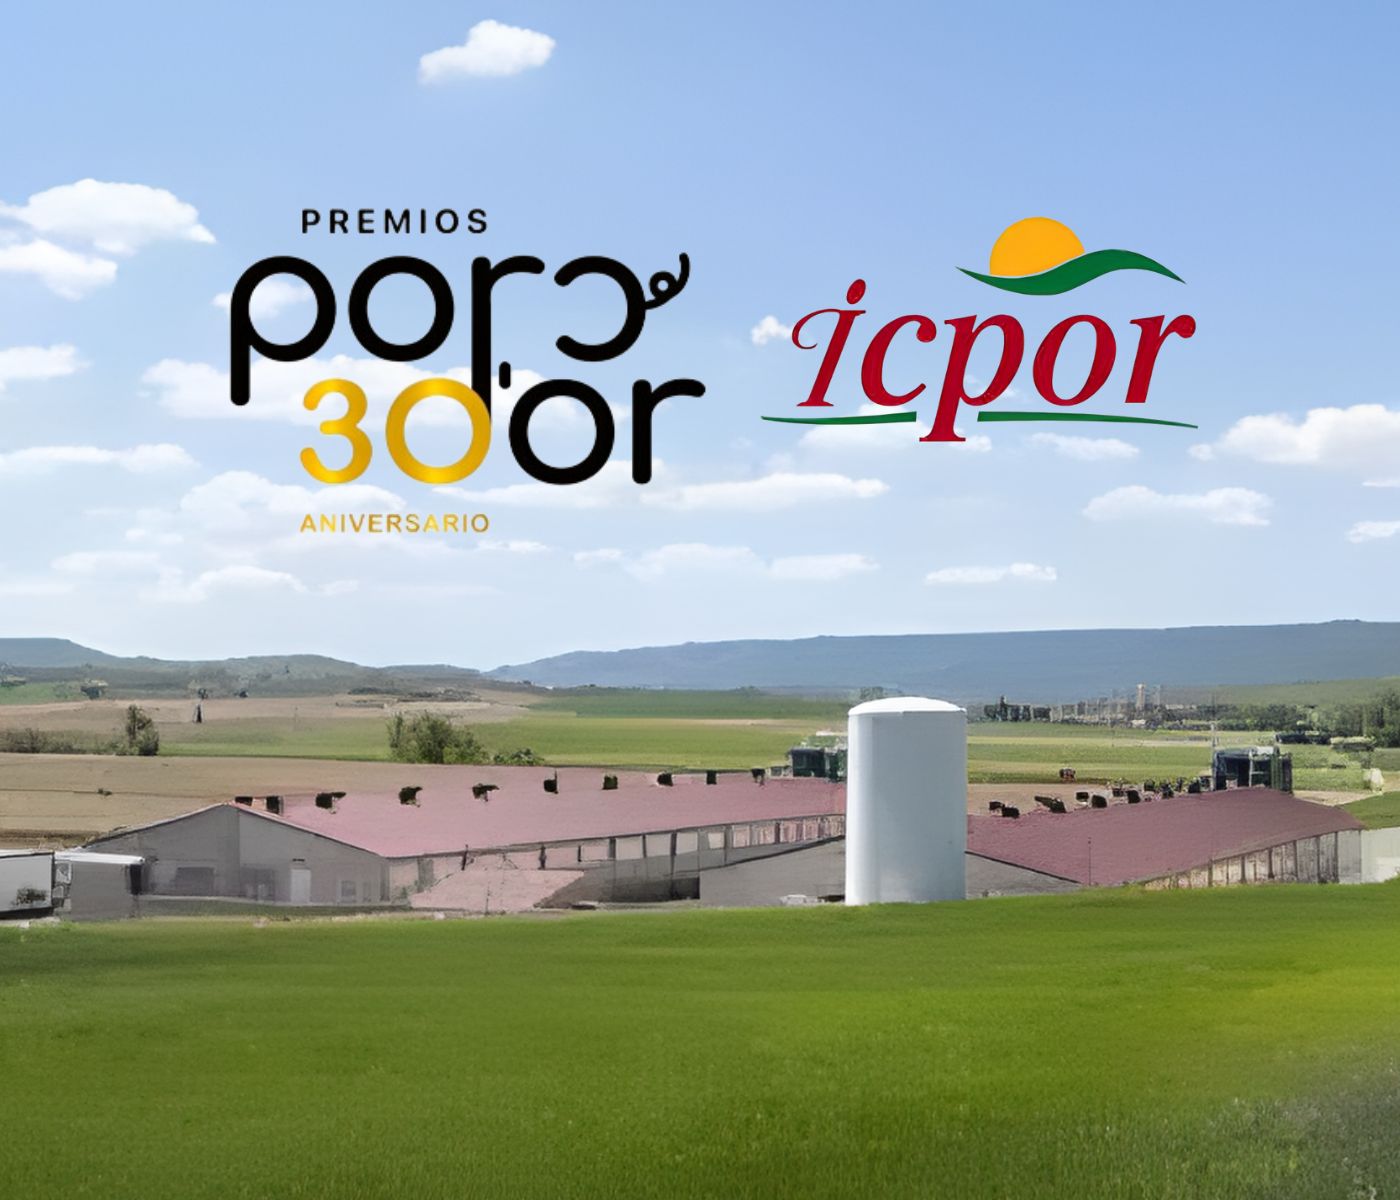 Una granja integrada con ICPOR consigue un oro en los premios Porc d’Or